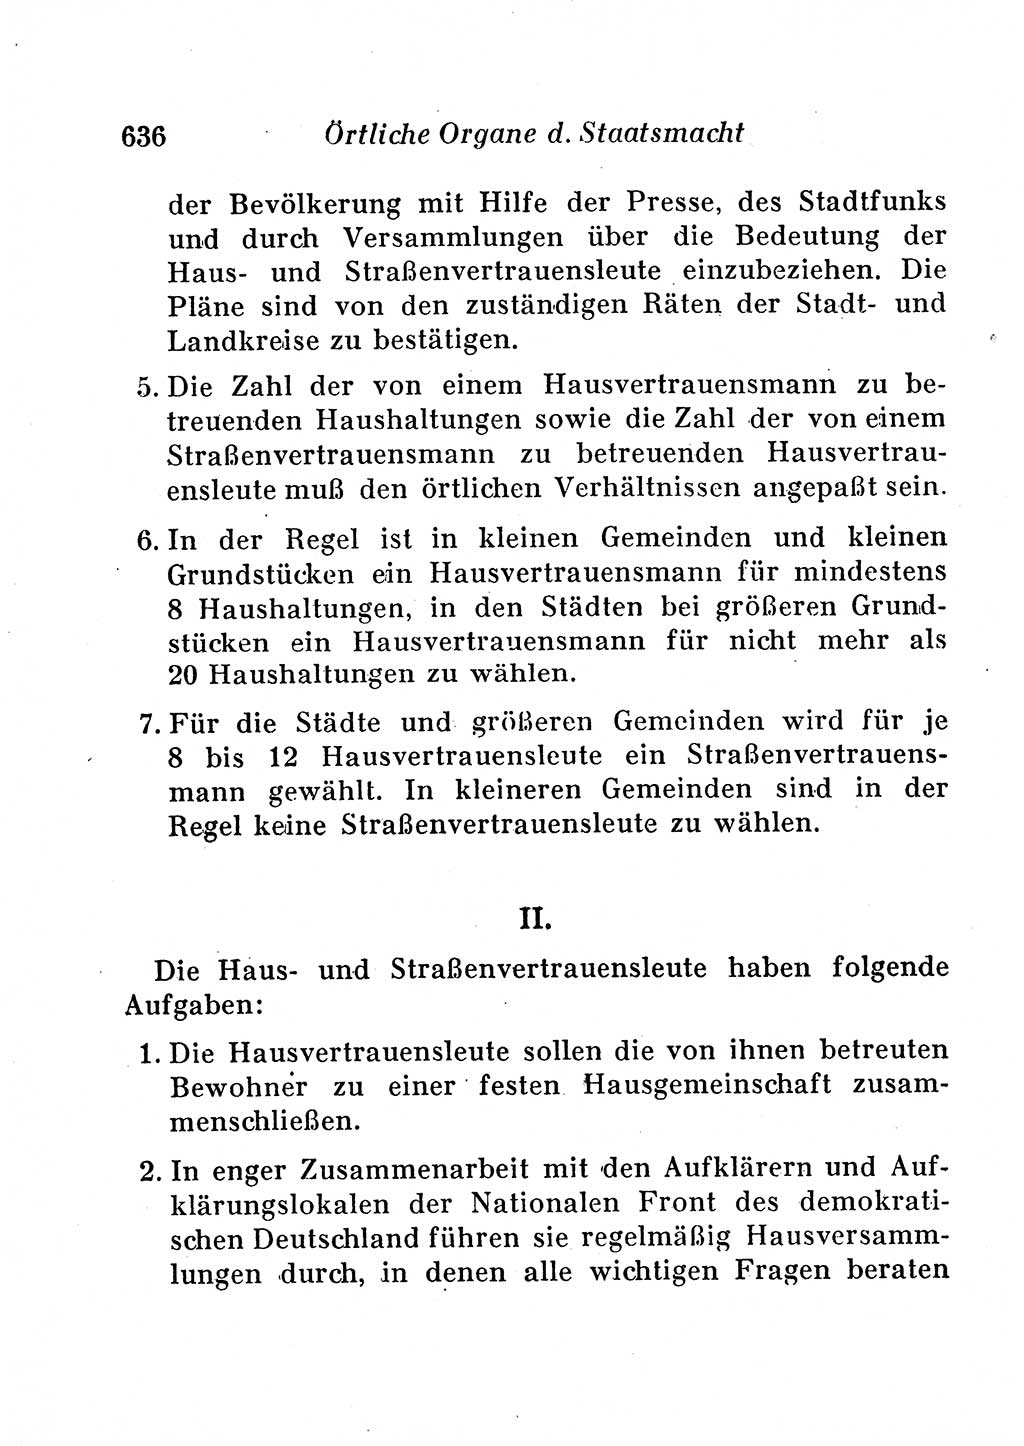 Staats- und verwaltungsrechtliche Gesetze der Deutschen Demokratischen Republik (DDR) 1958, Seite 636 (StVerwR Ges. DDR 1958, S. 636)